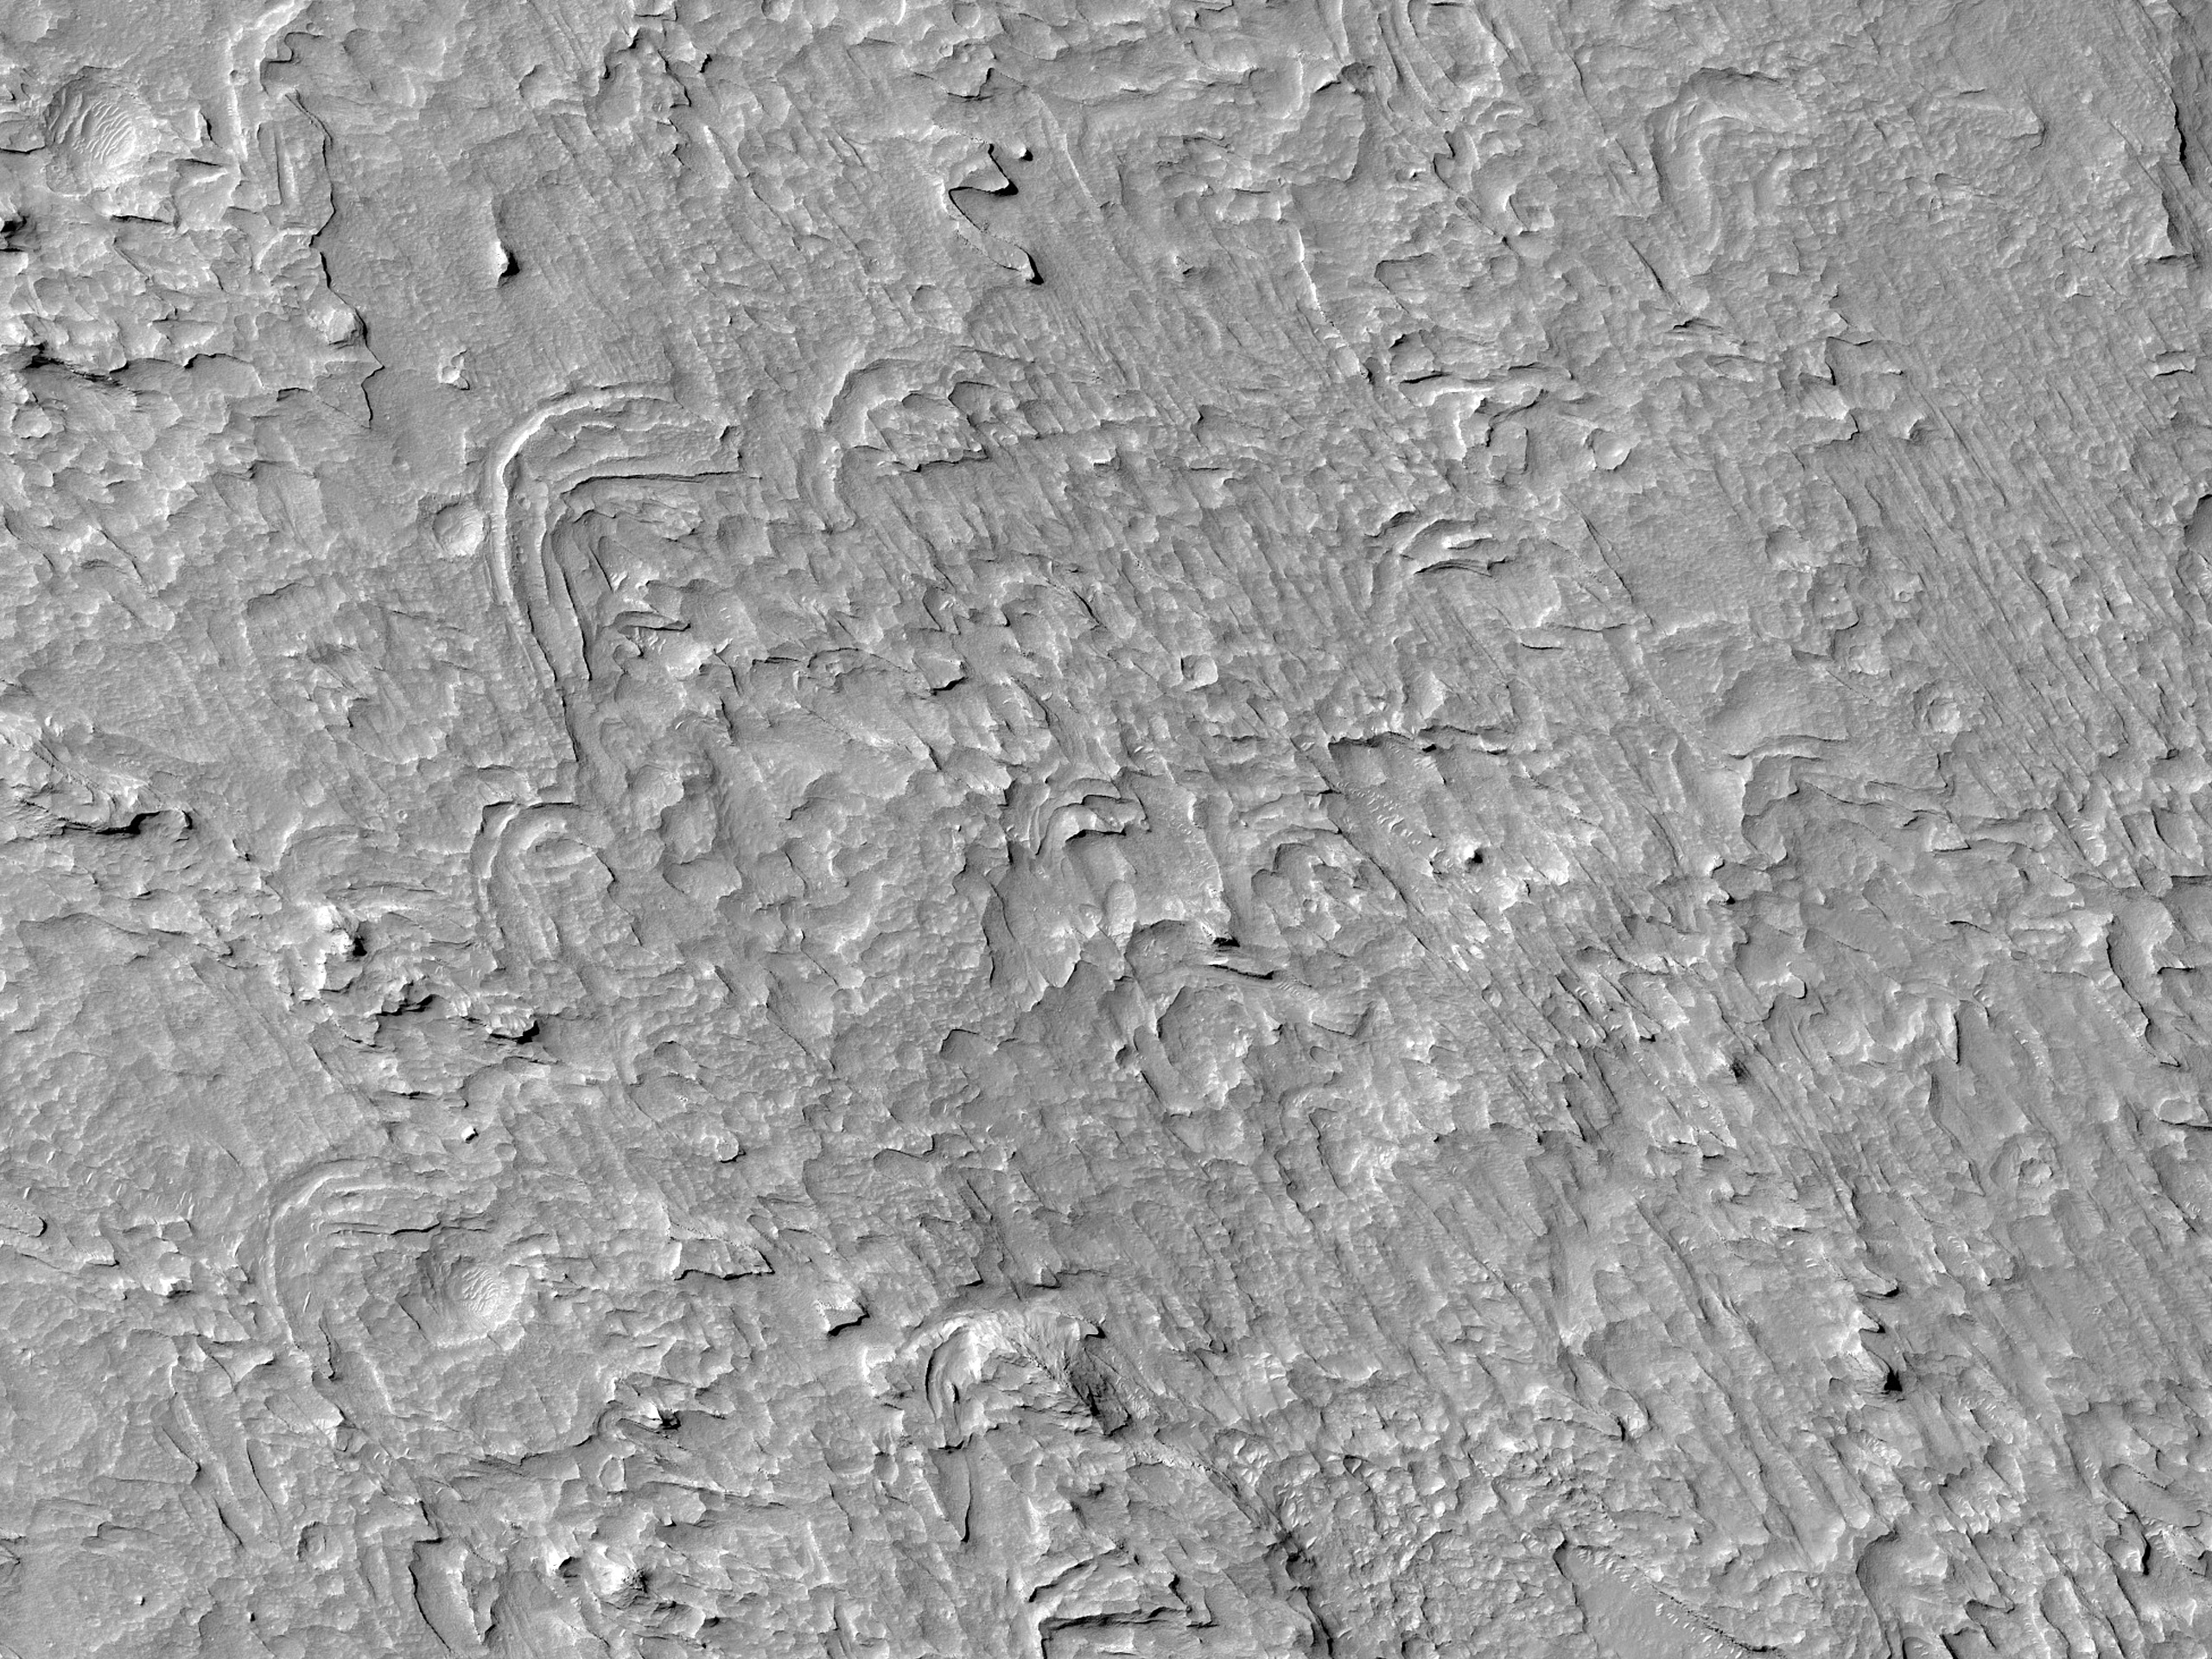 Crescent Forms in Aeolis Planum